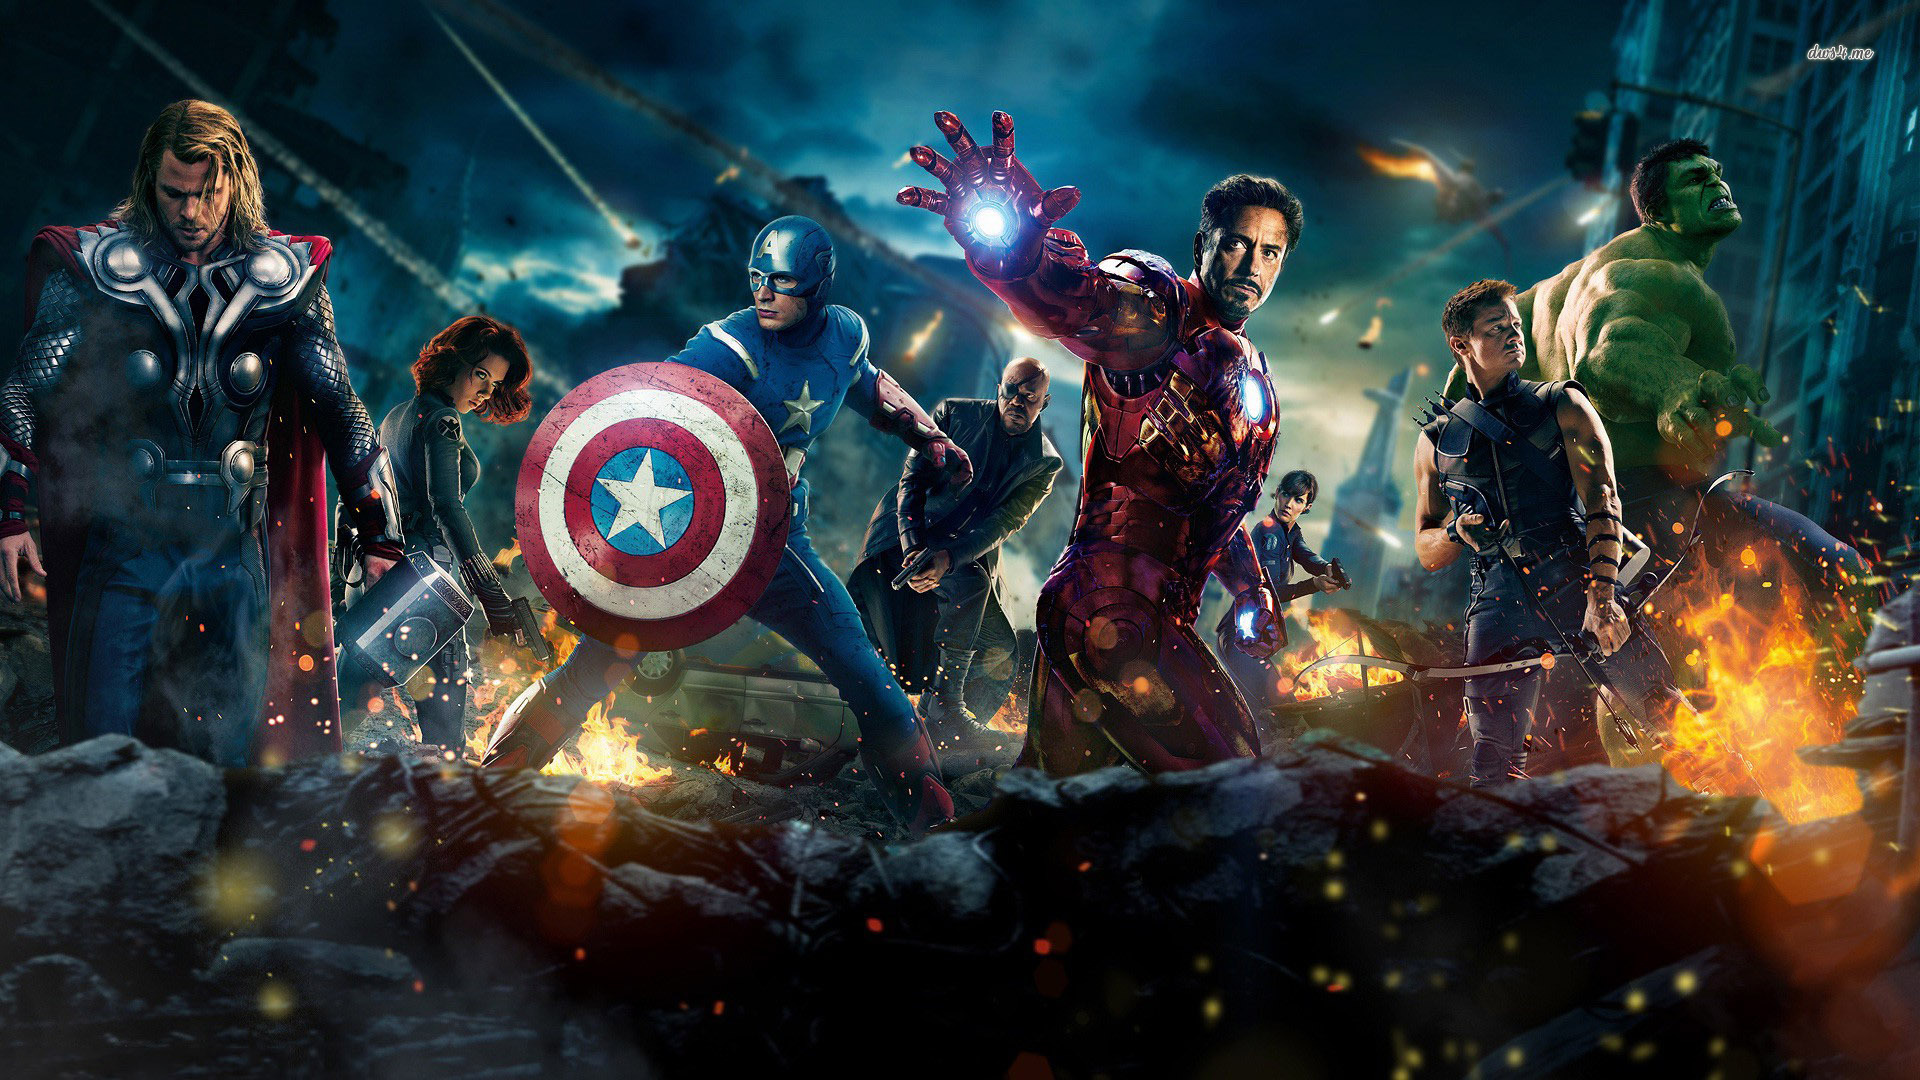 Iron Man Team - Captain America: Civil War Wallpaper (39903881) - Fanpop